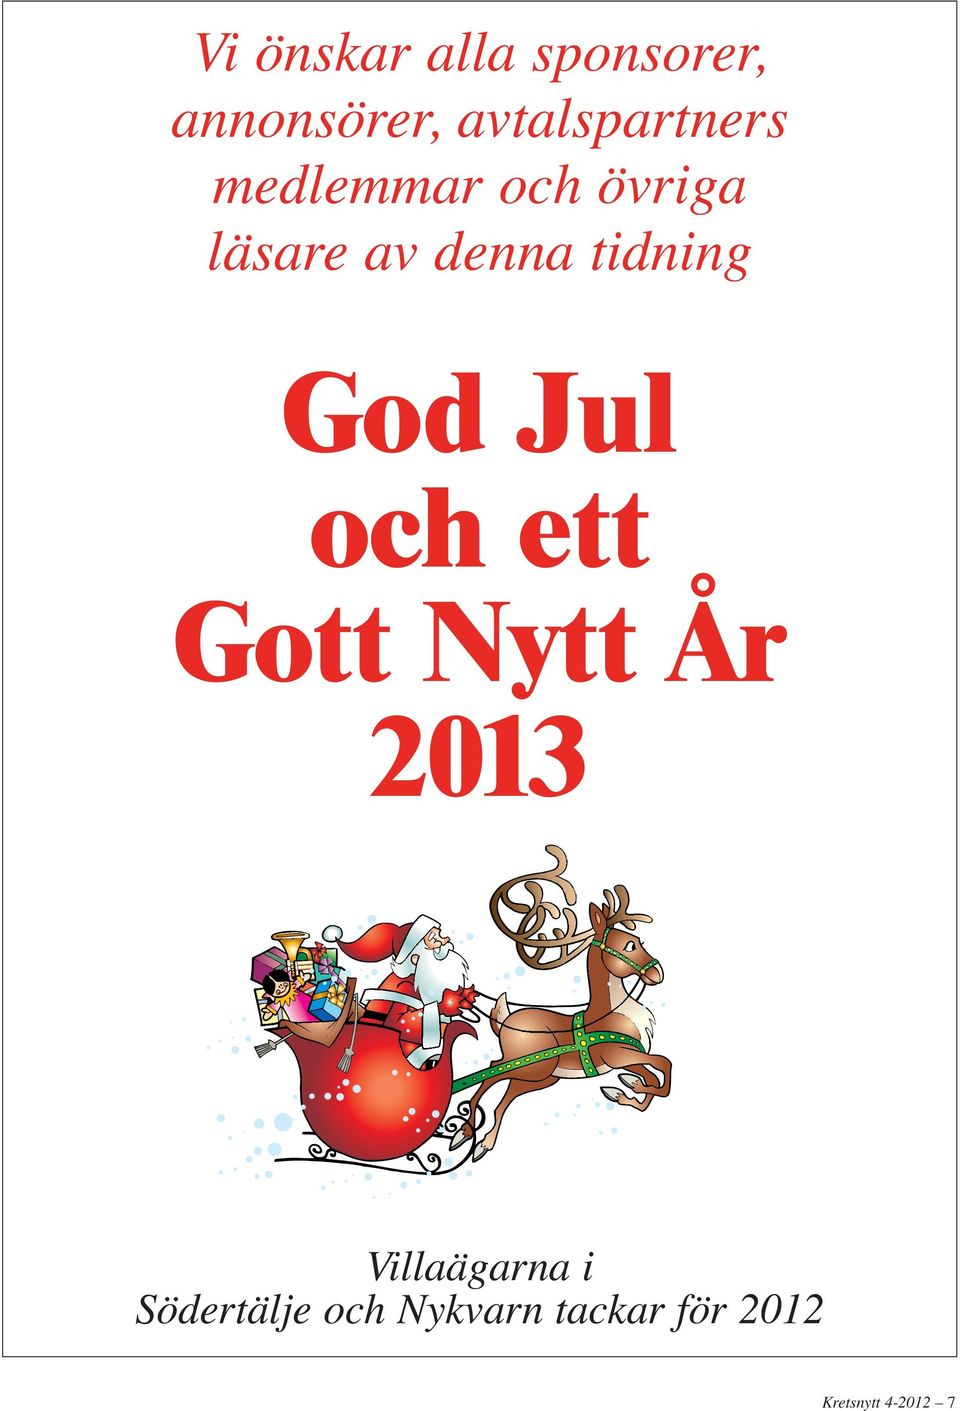 denna tidning God Jul och ett Gott Nytt År 2013